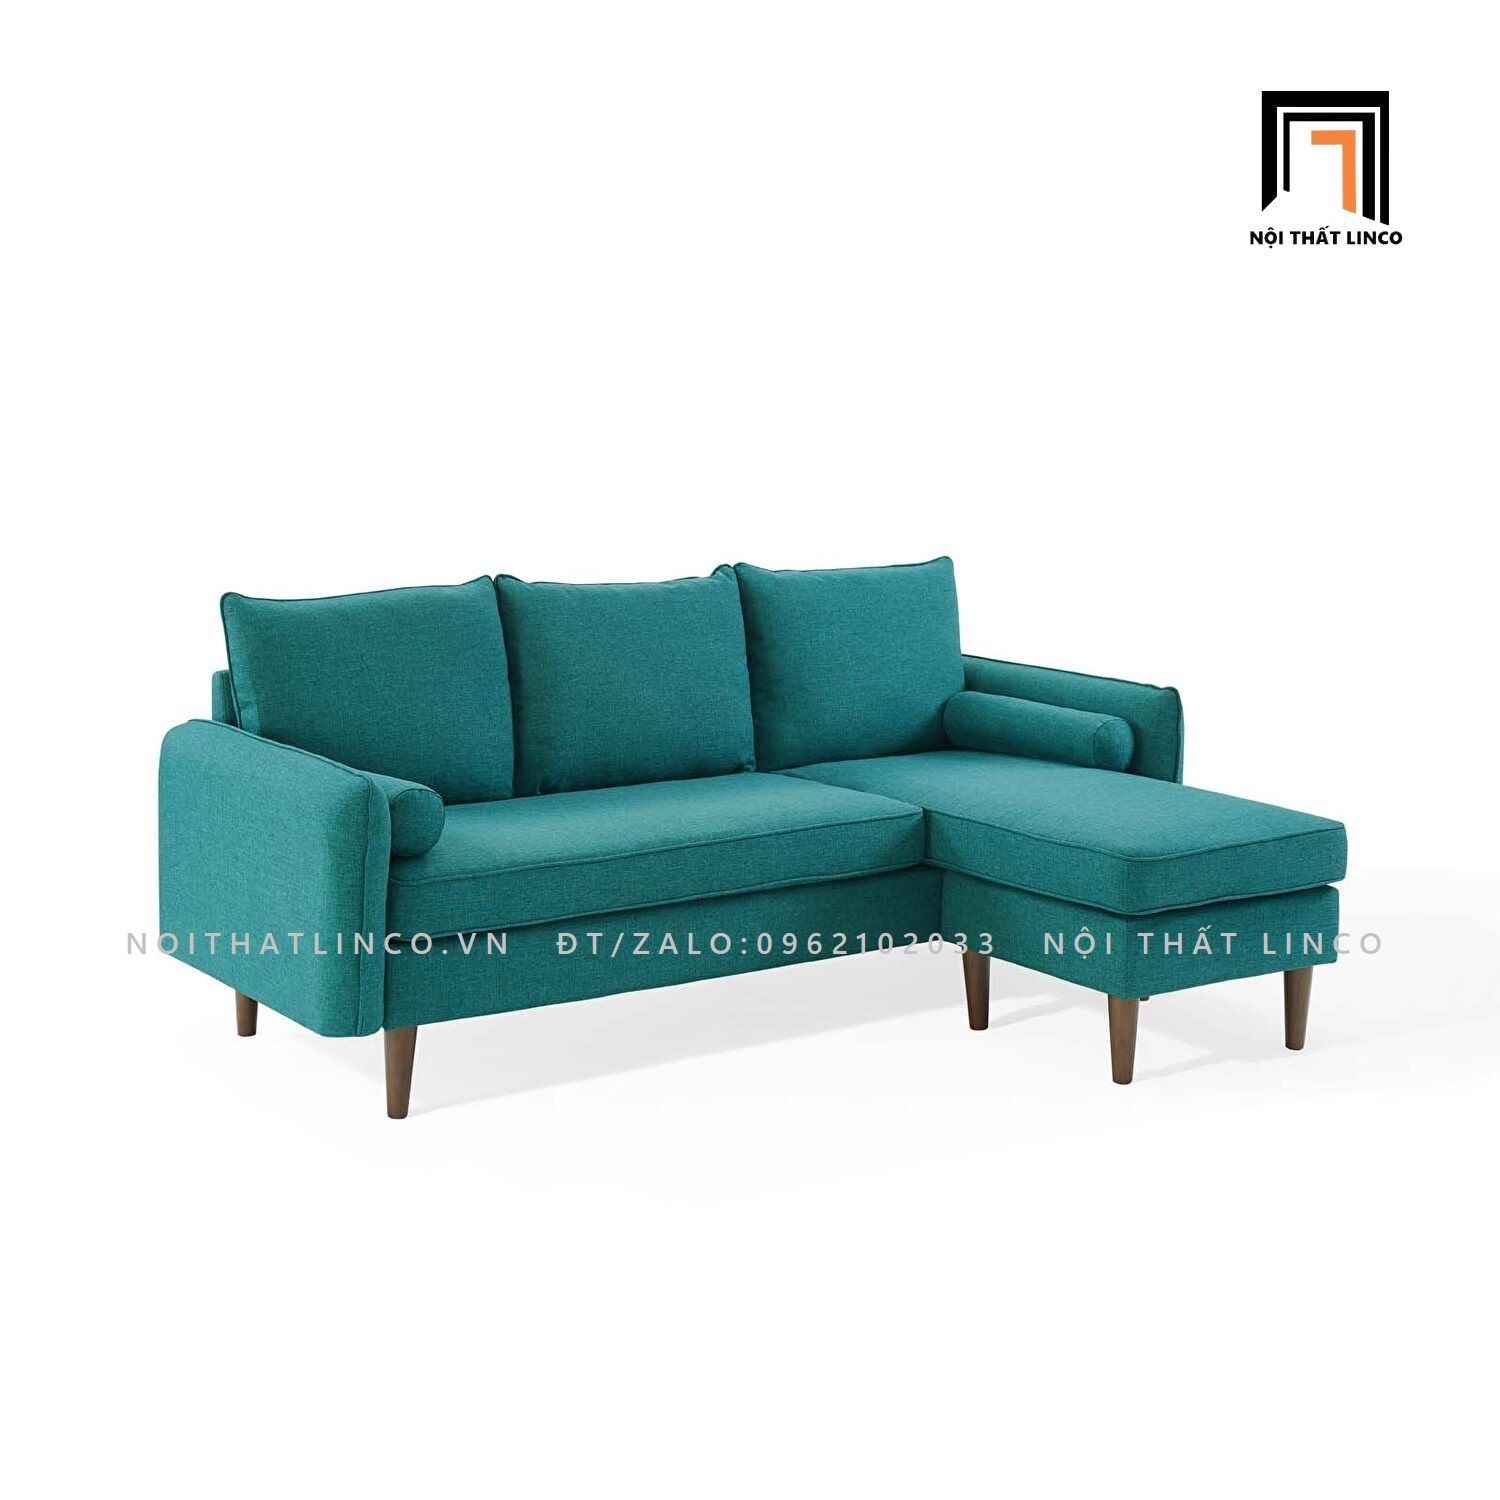  Bộ ghế sofa góc L GT67 Revive 2m x 1m4 cho phòng khách nhỏ 